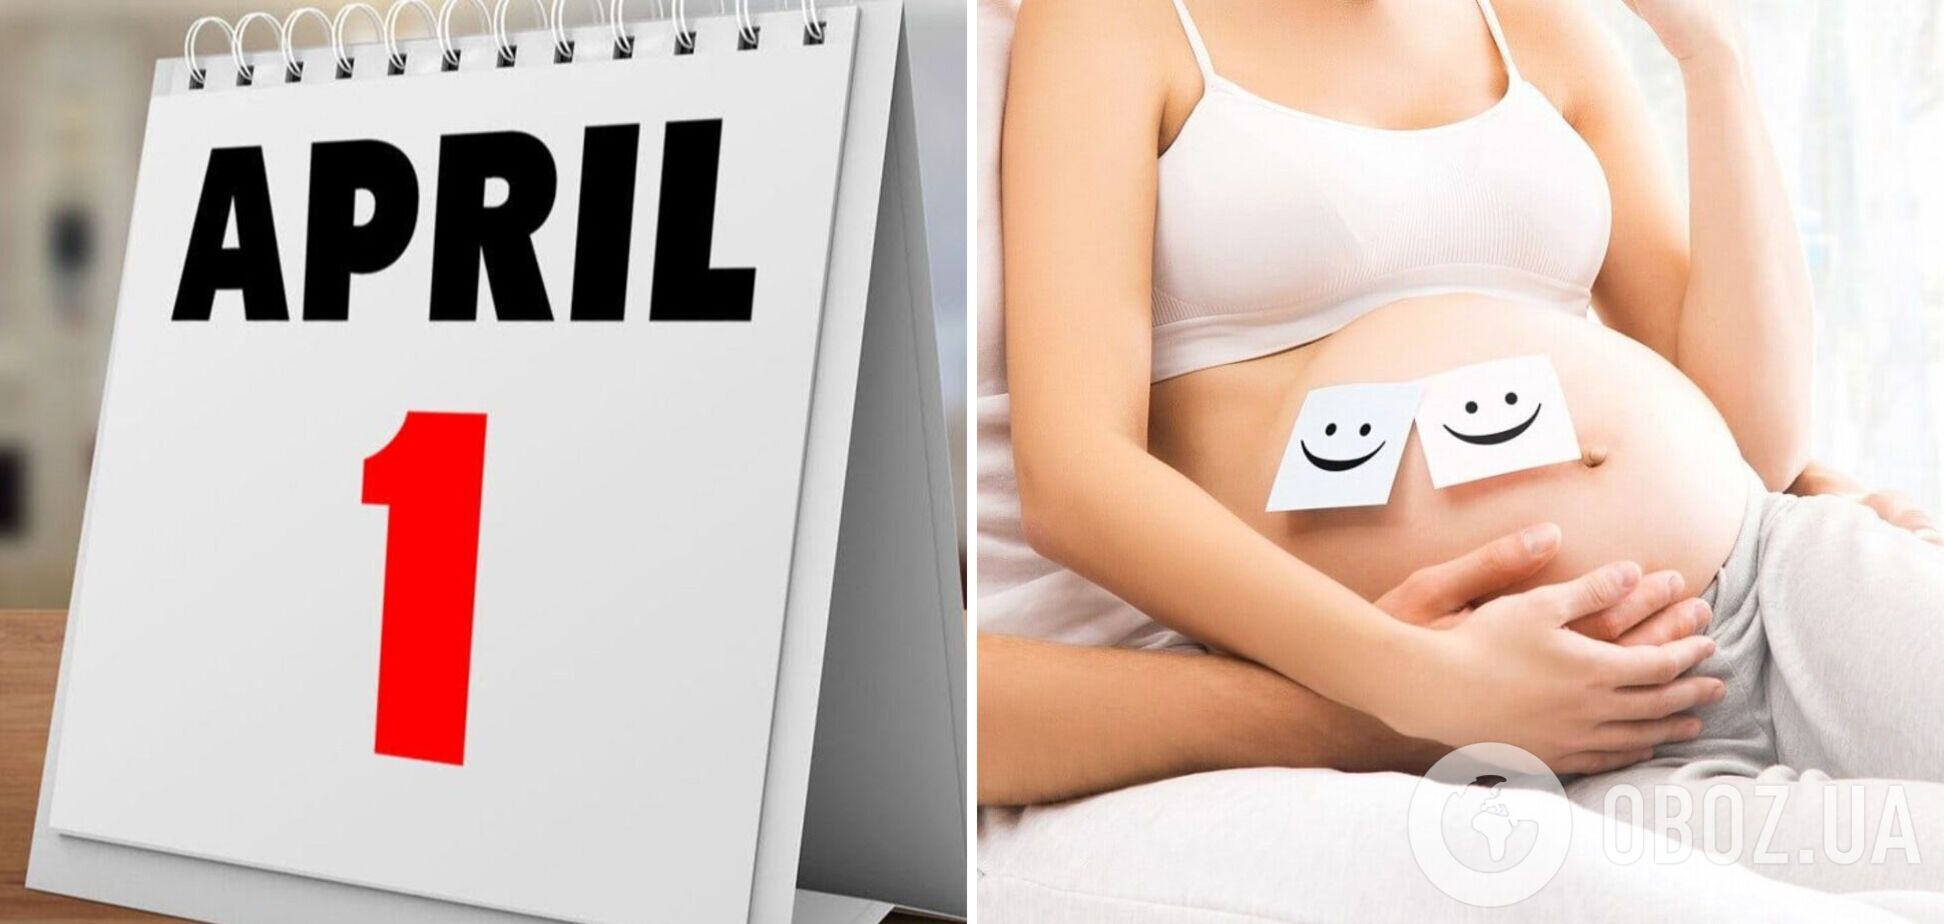 День смеха: почему не стоит шутить о беременности 1 апреля